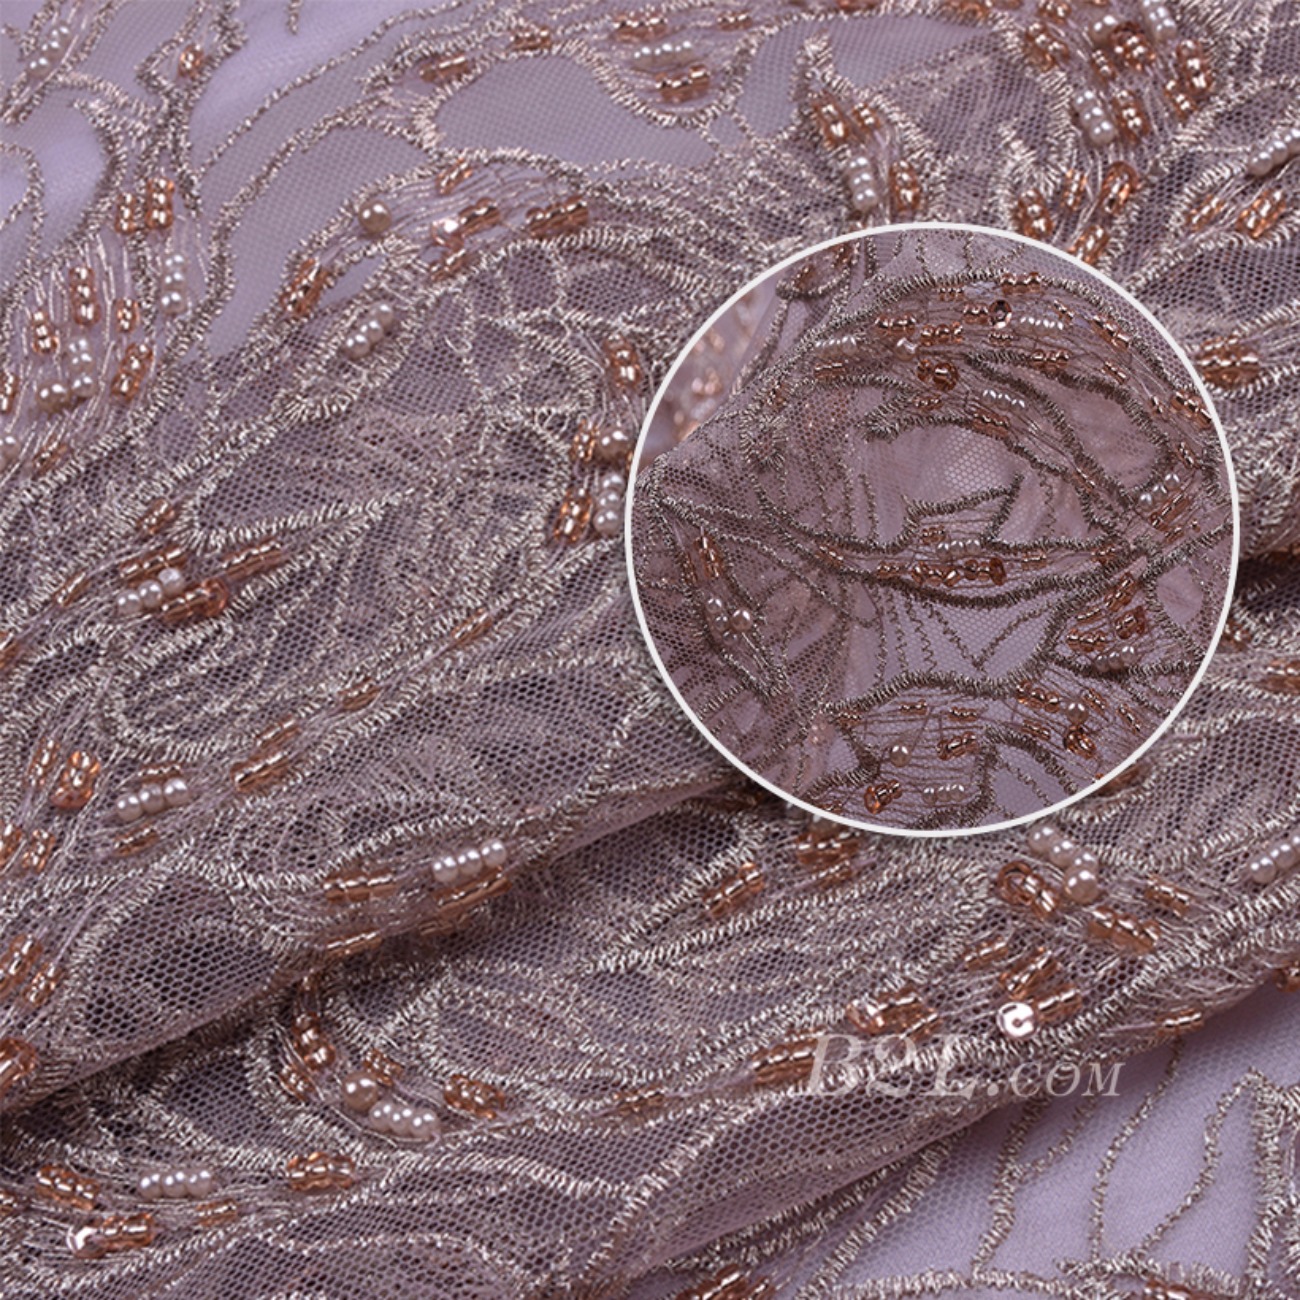 法式刺绣婚纱上的工艺鉴赏 - 哔哩哔哩